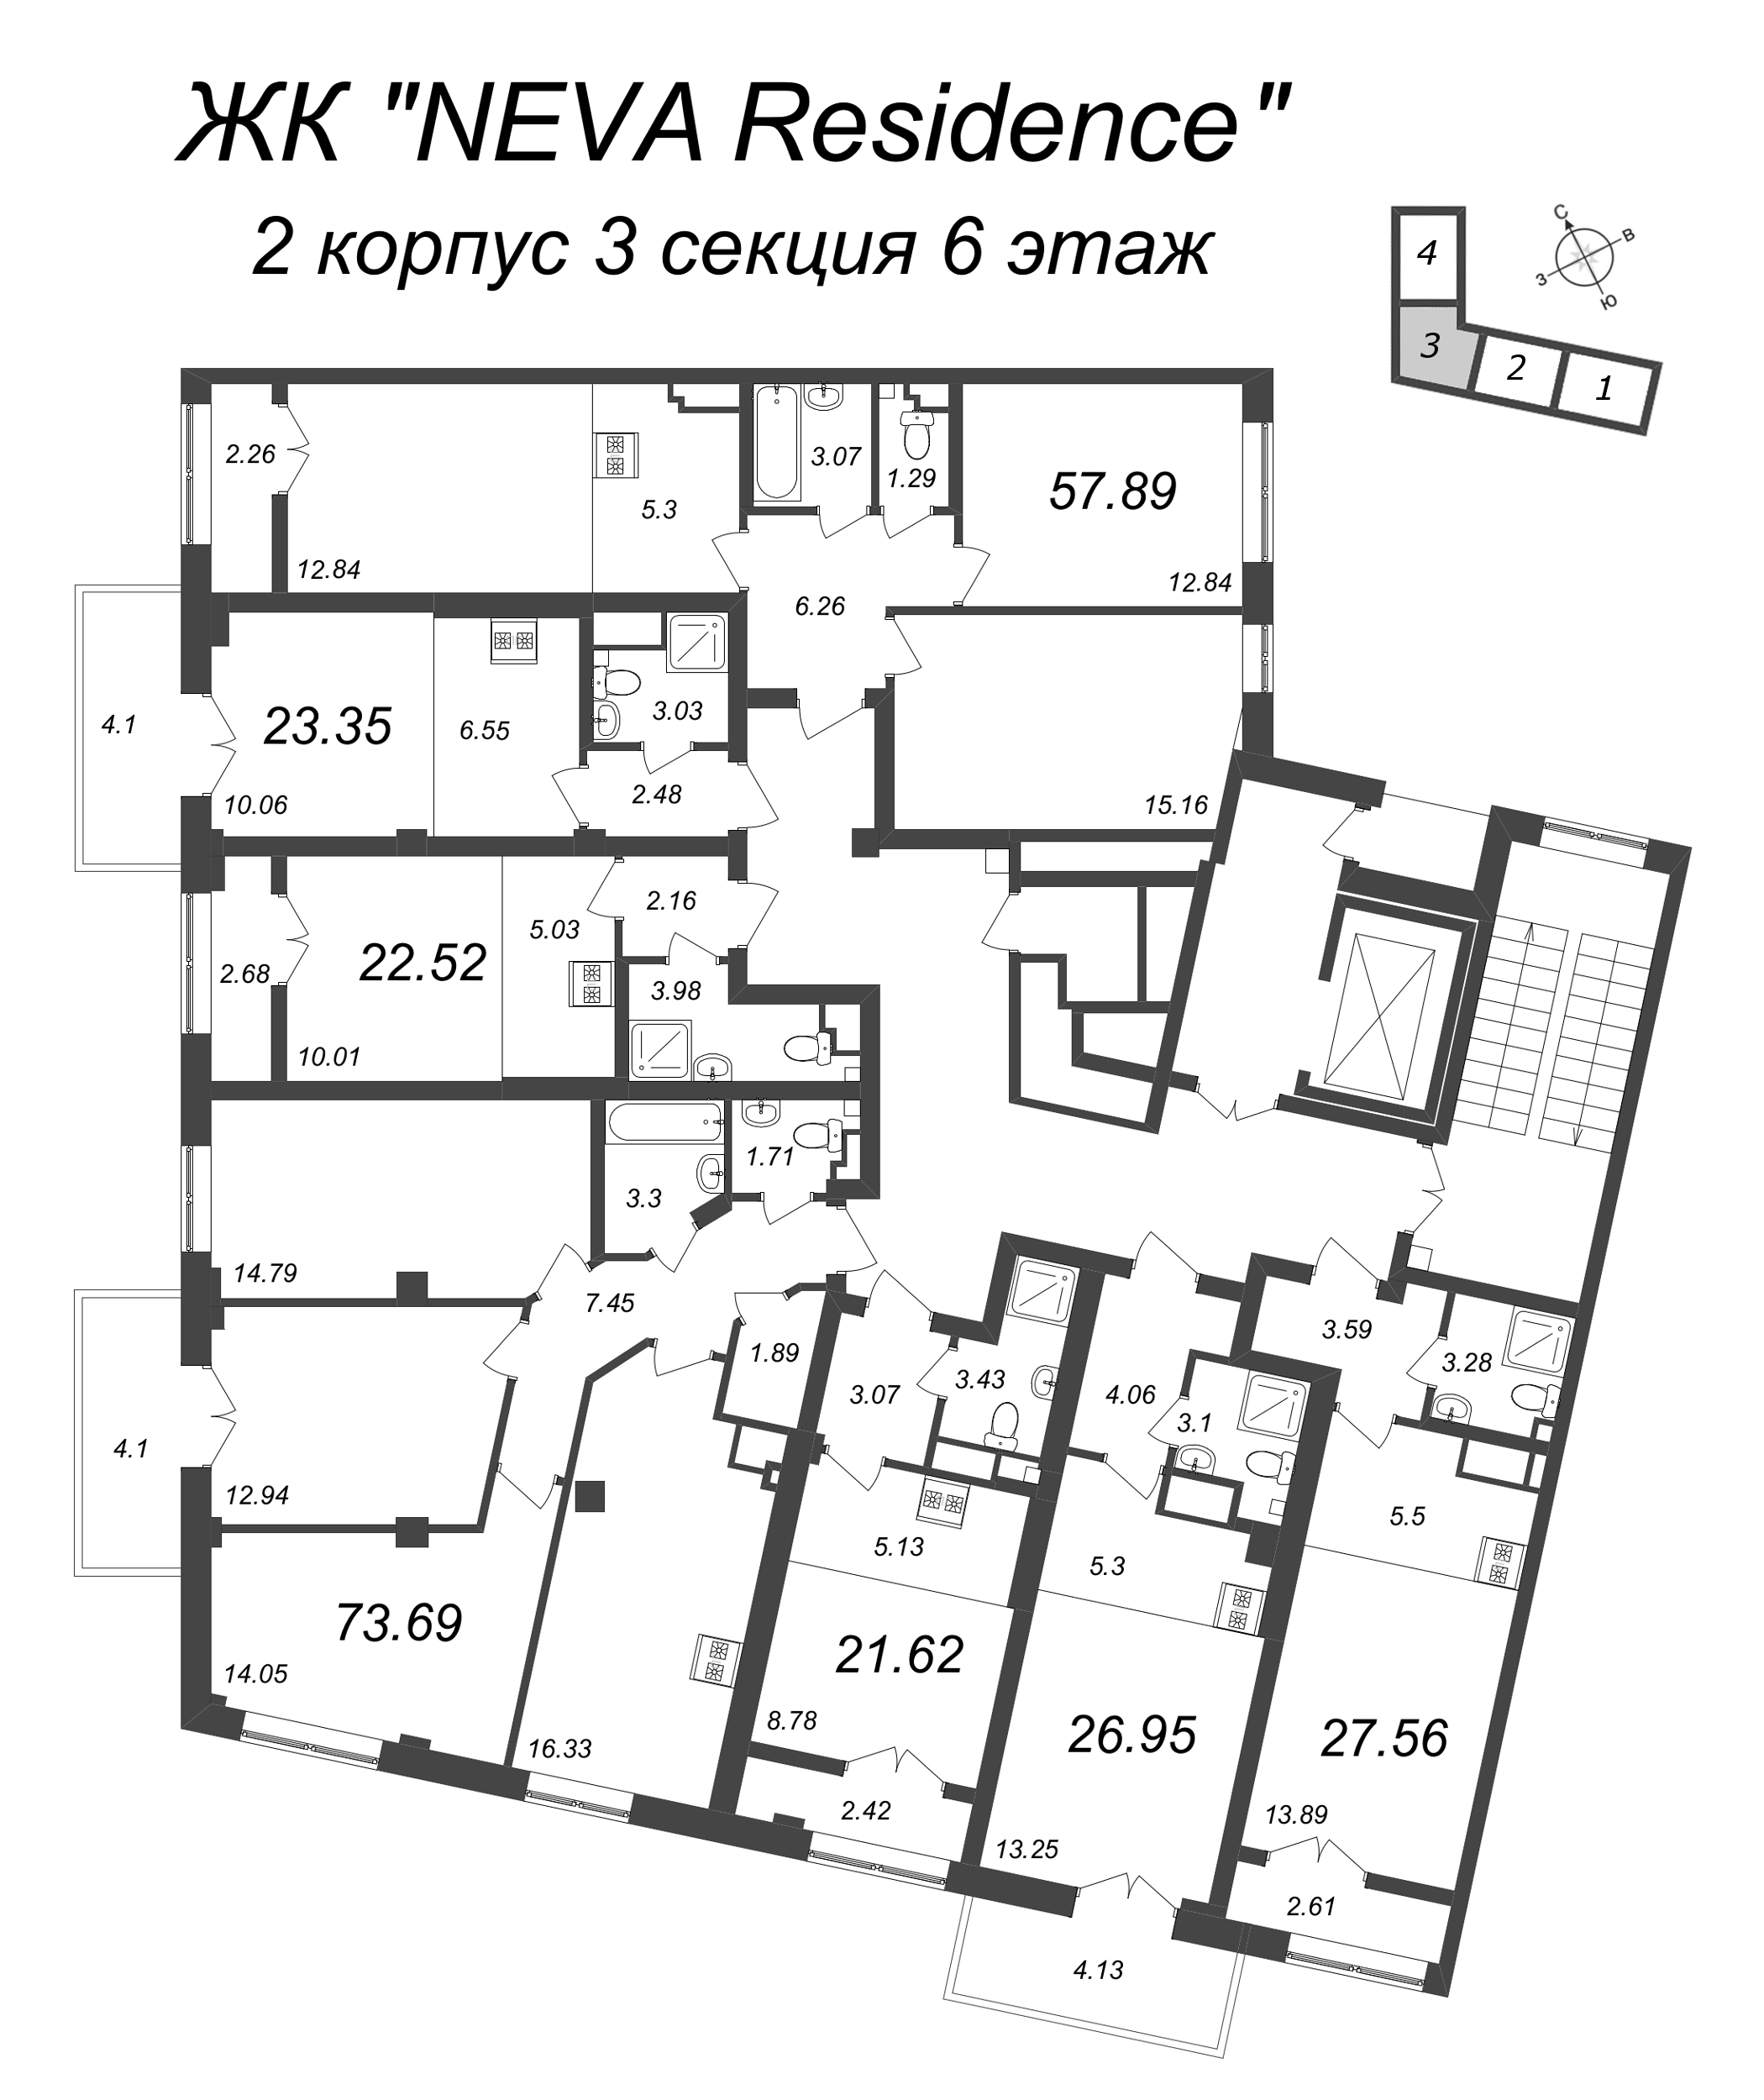 Квартира-студия, 21.62 м² в ЖК "Neva Residence" - планировка этажа